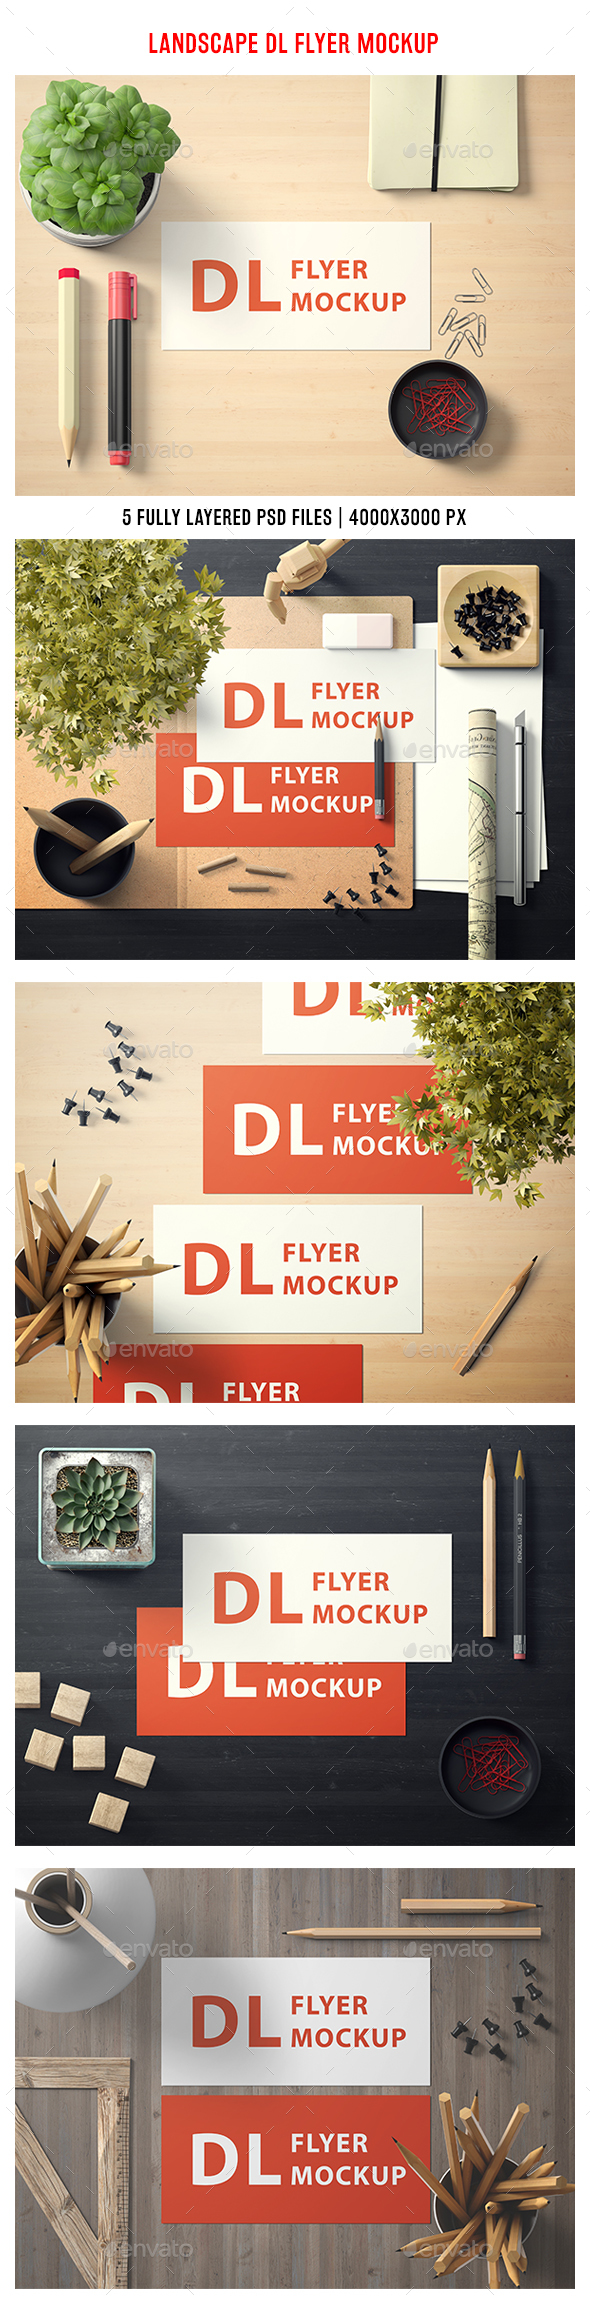 Download Stock Graphic - GraphicRiver Landscape DL Flyer Mockup 20884709 » Dondrup.com